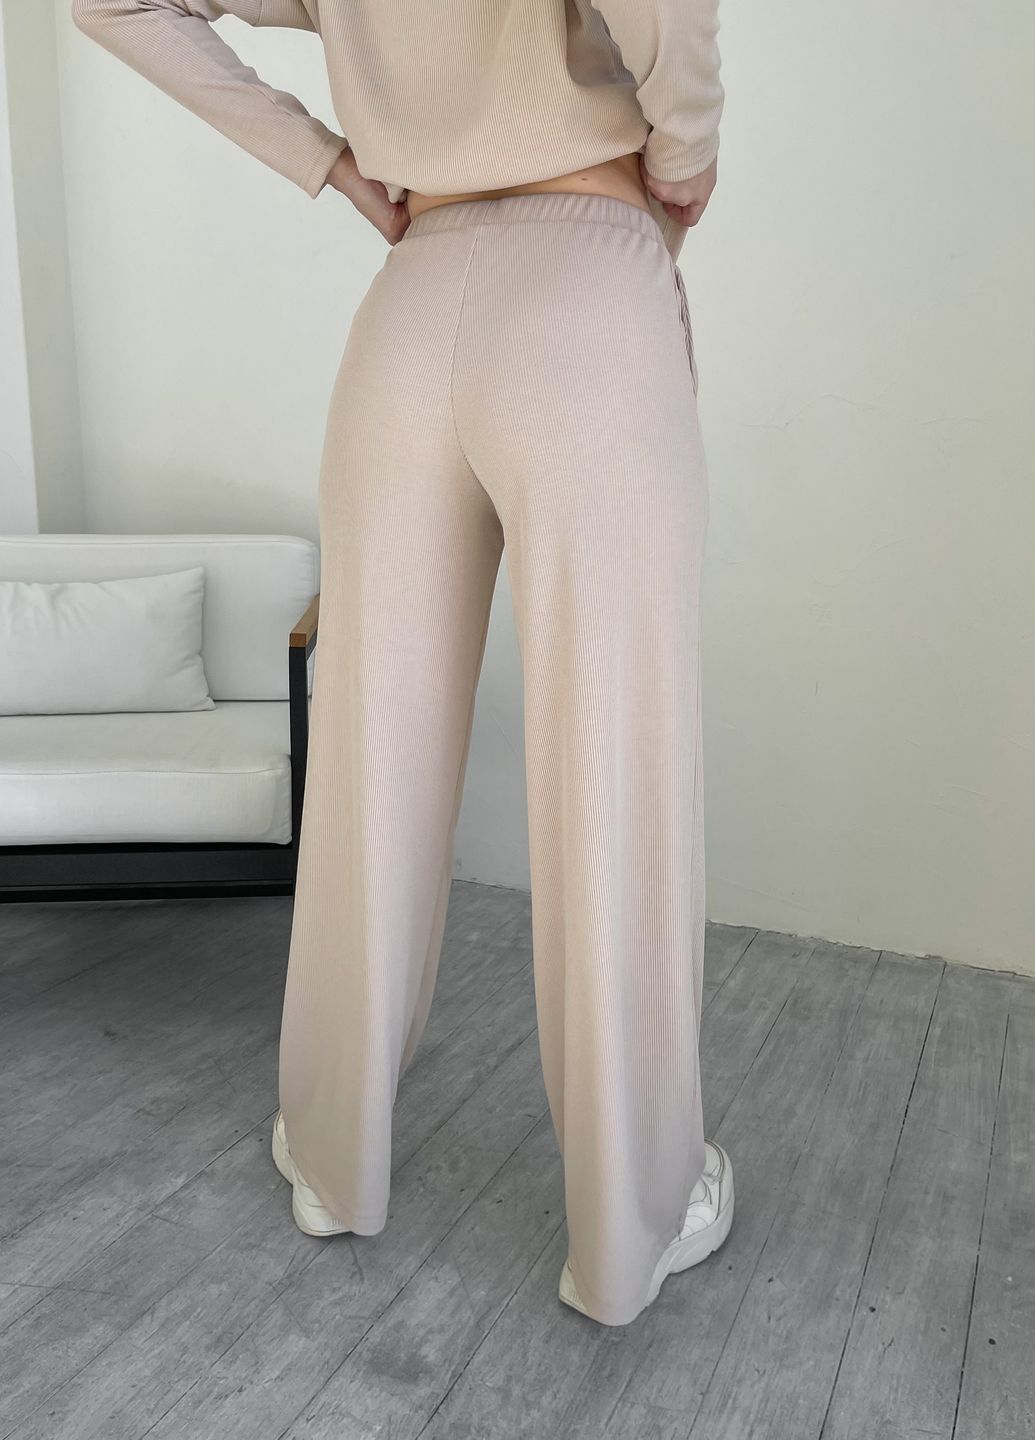 Купить Костюм женский в рубчик бежевого цвета с широкими штанами Merlini Мантуя 100000402, размер XS-M в интернет-магазине